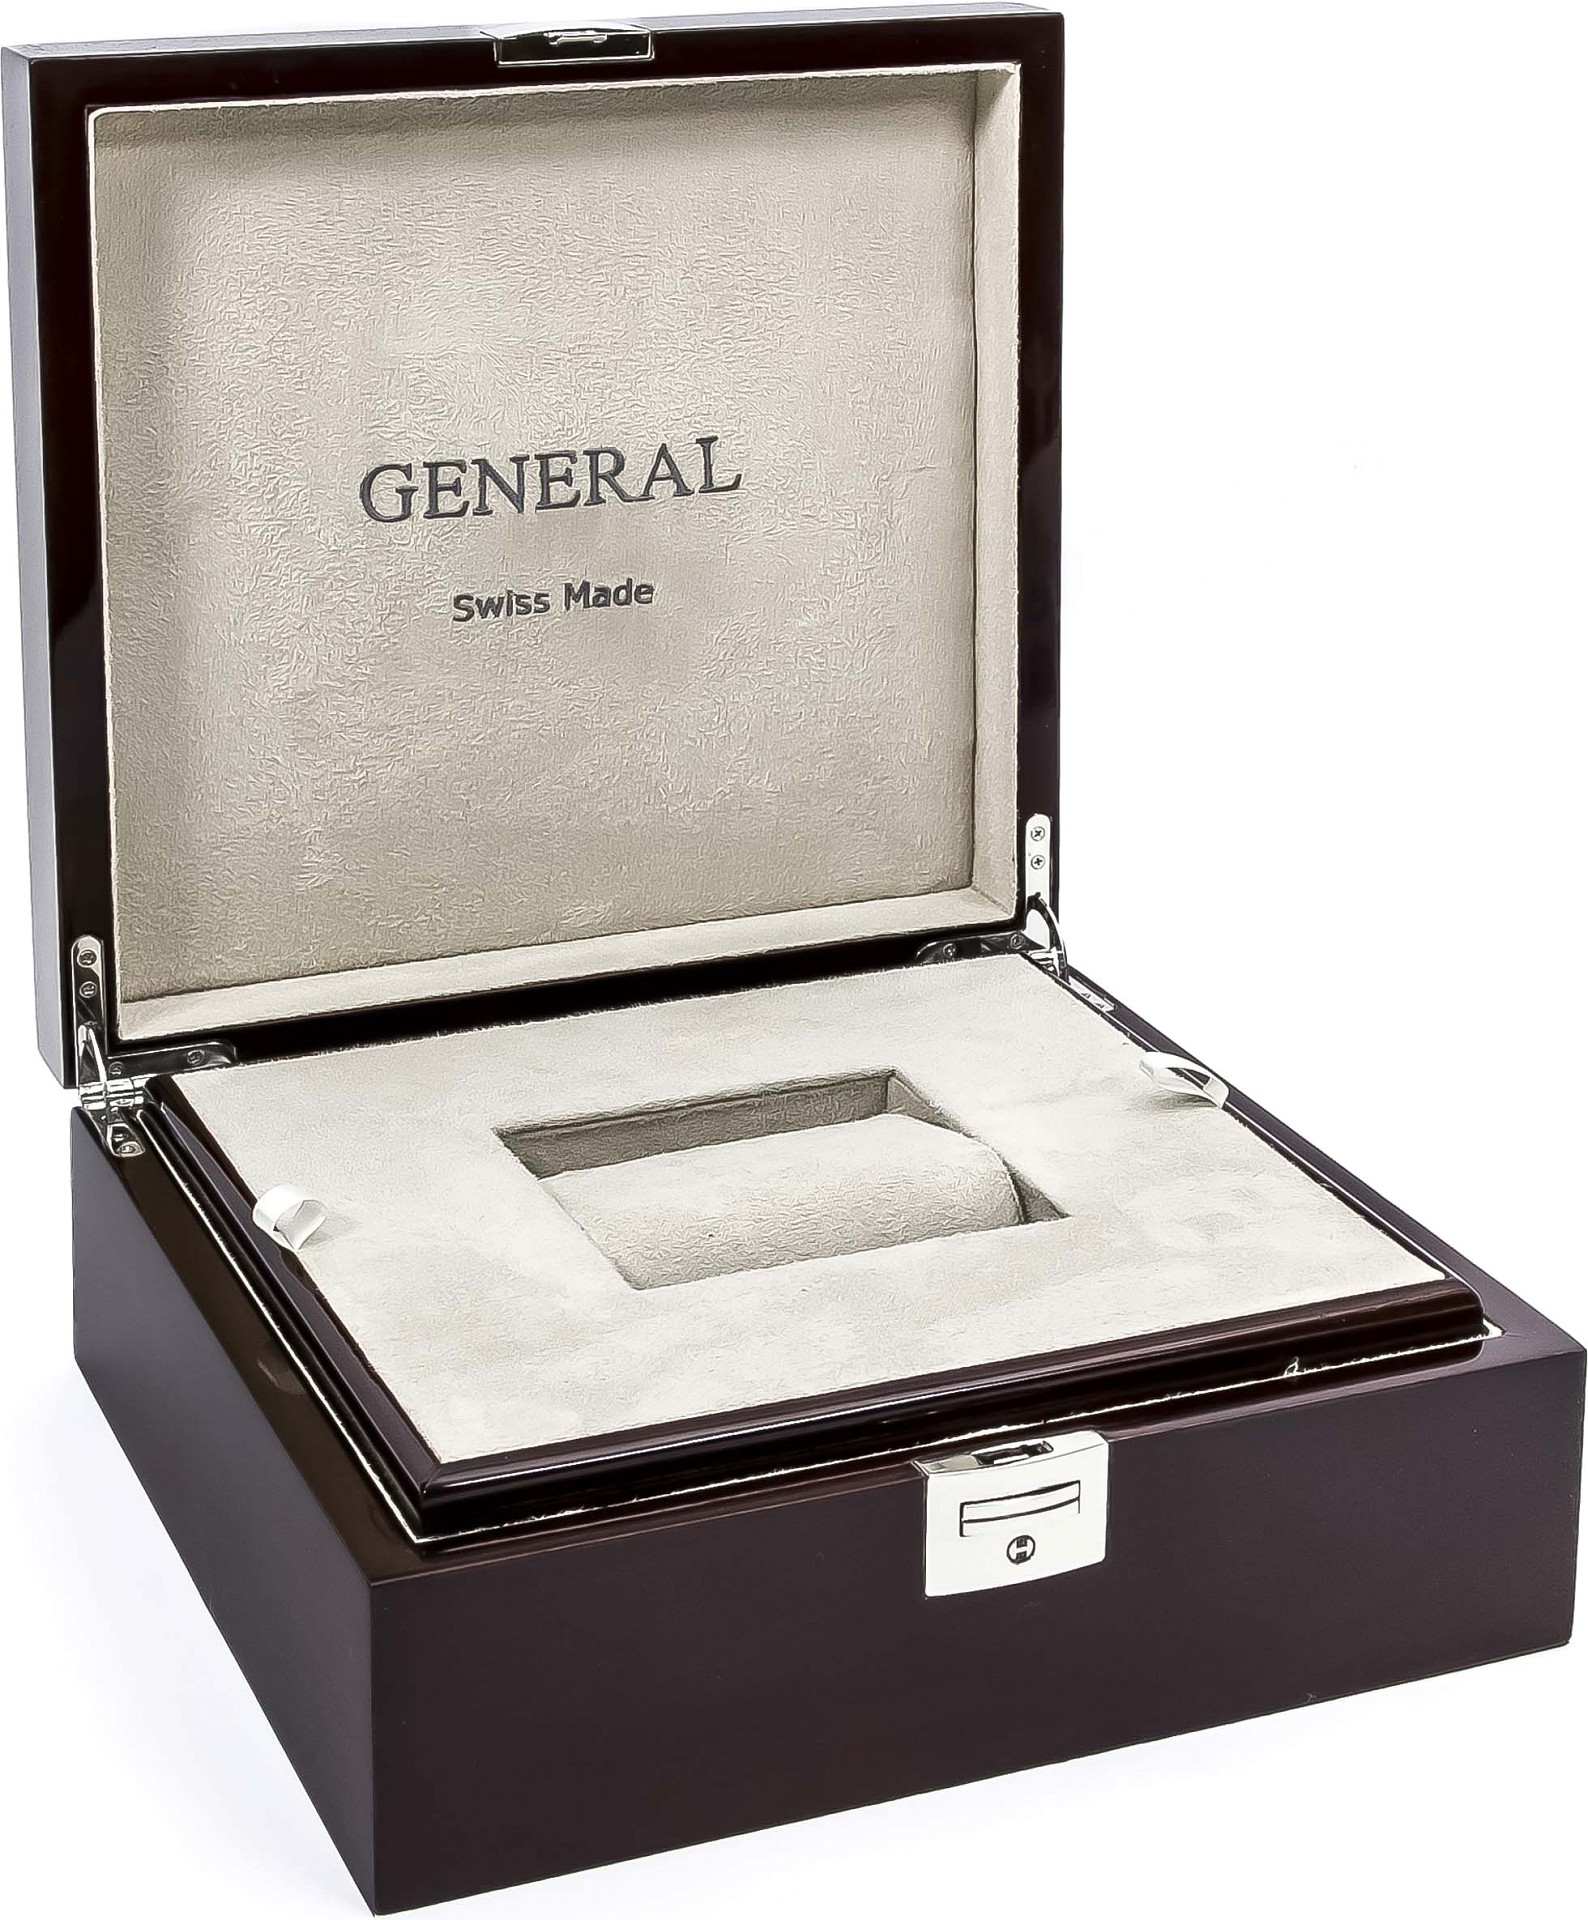  General XL Uhrenbox für 1 Uhr aus Holz 